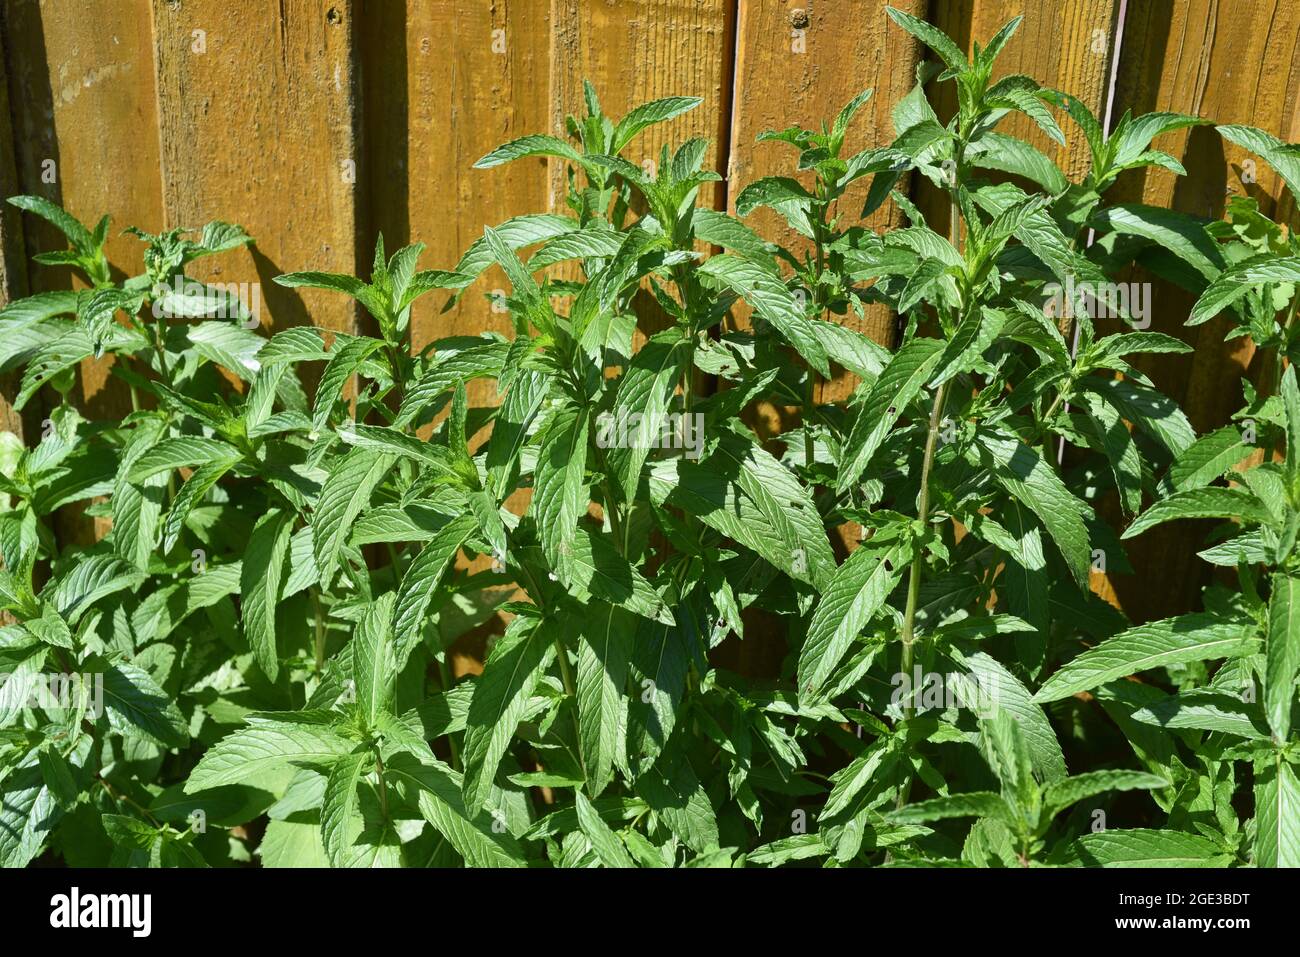 Pfefferminze, Mentha piperita, ist eines der wichtigsten Heilpflanzen und Gewuerzkraeuter in der Kueche und Heilmedizin. Peppermint, Mentha piperita, Stock Photo